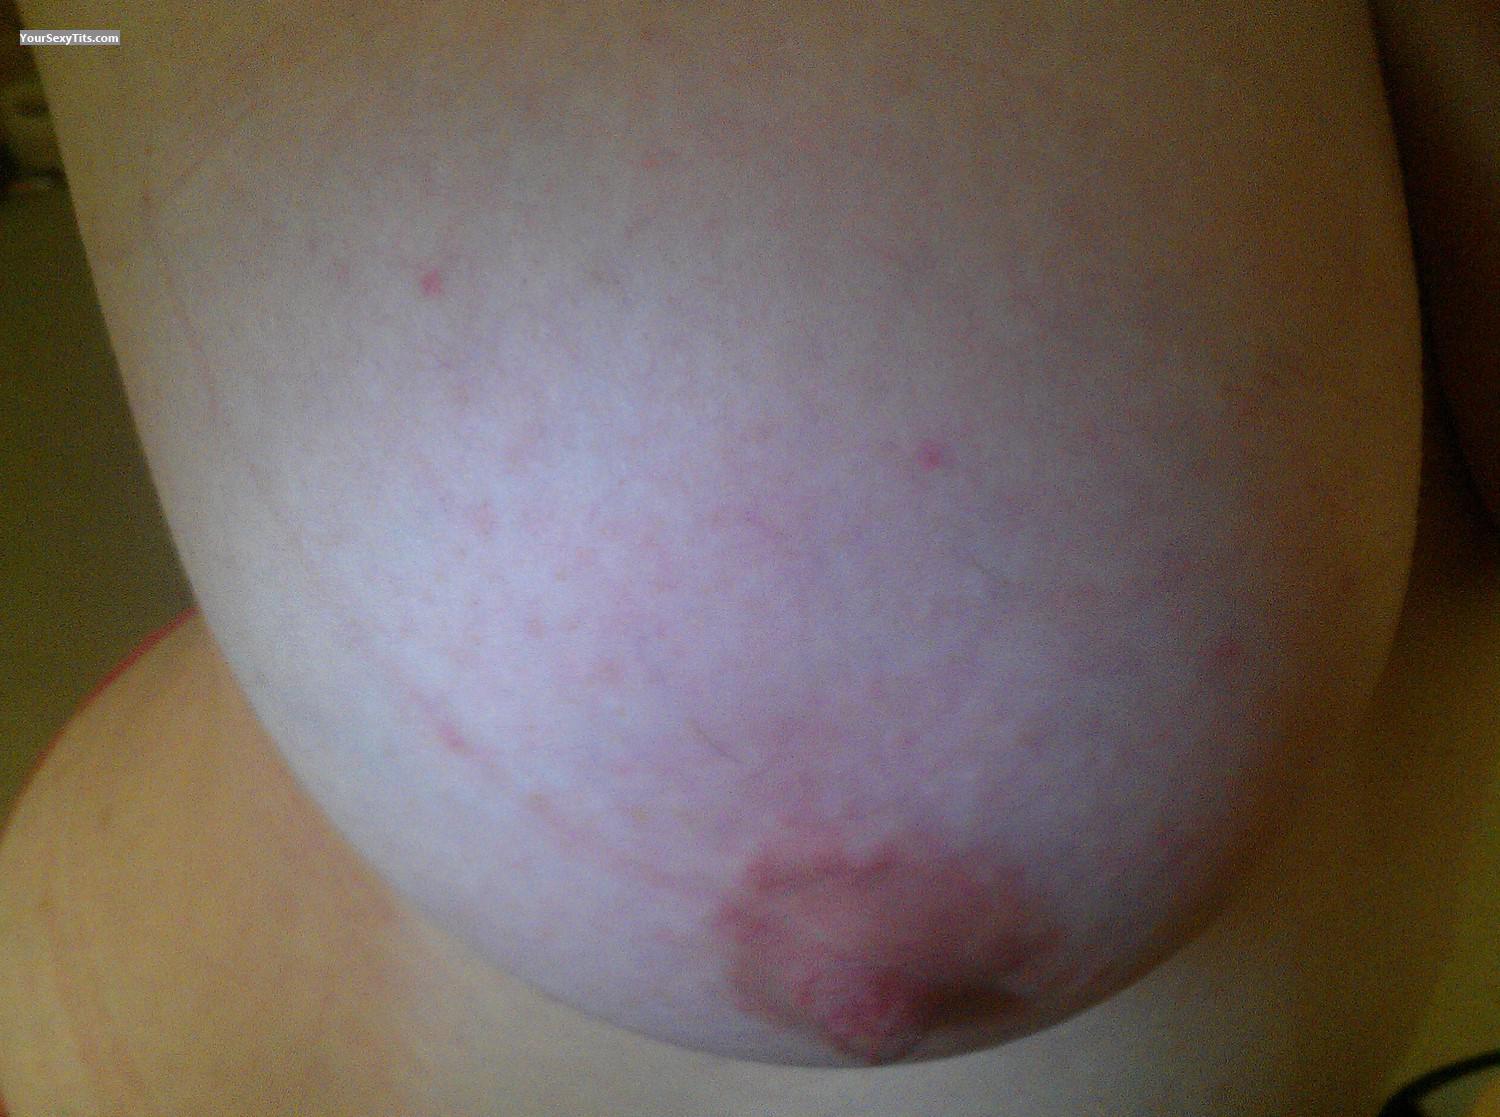 Tit Flash: My Very Big Tits (Selfie) - LMC-GG from United Kingdom